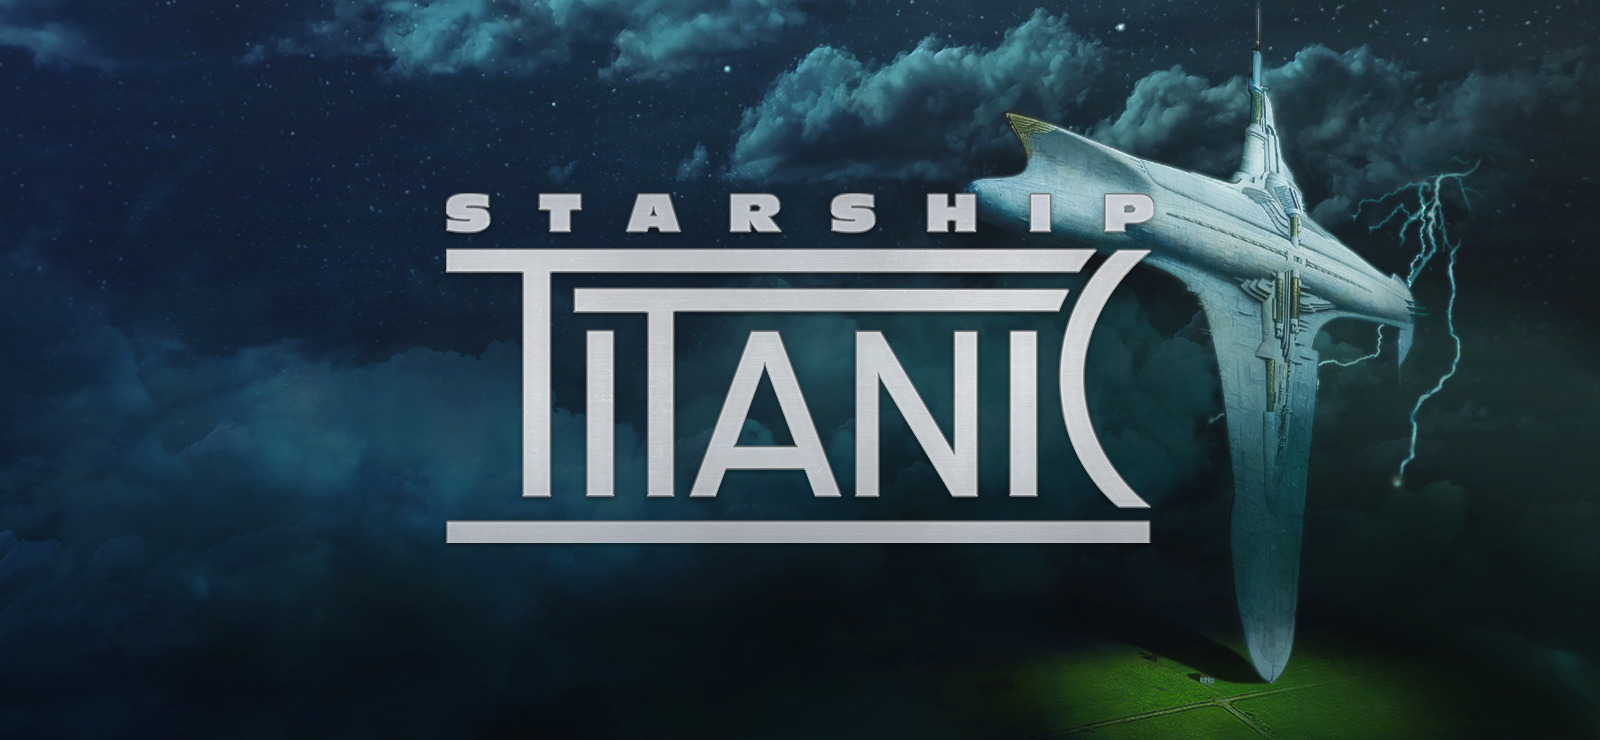 starship titanic lagging windows 10